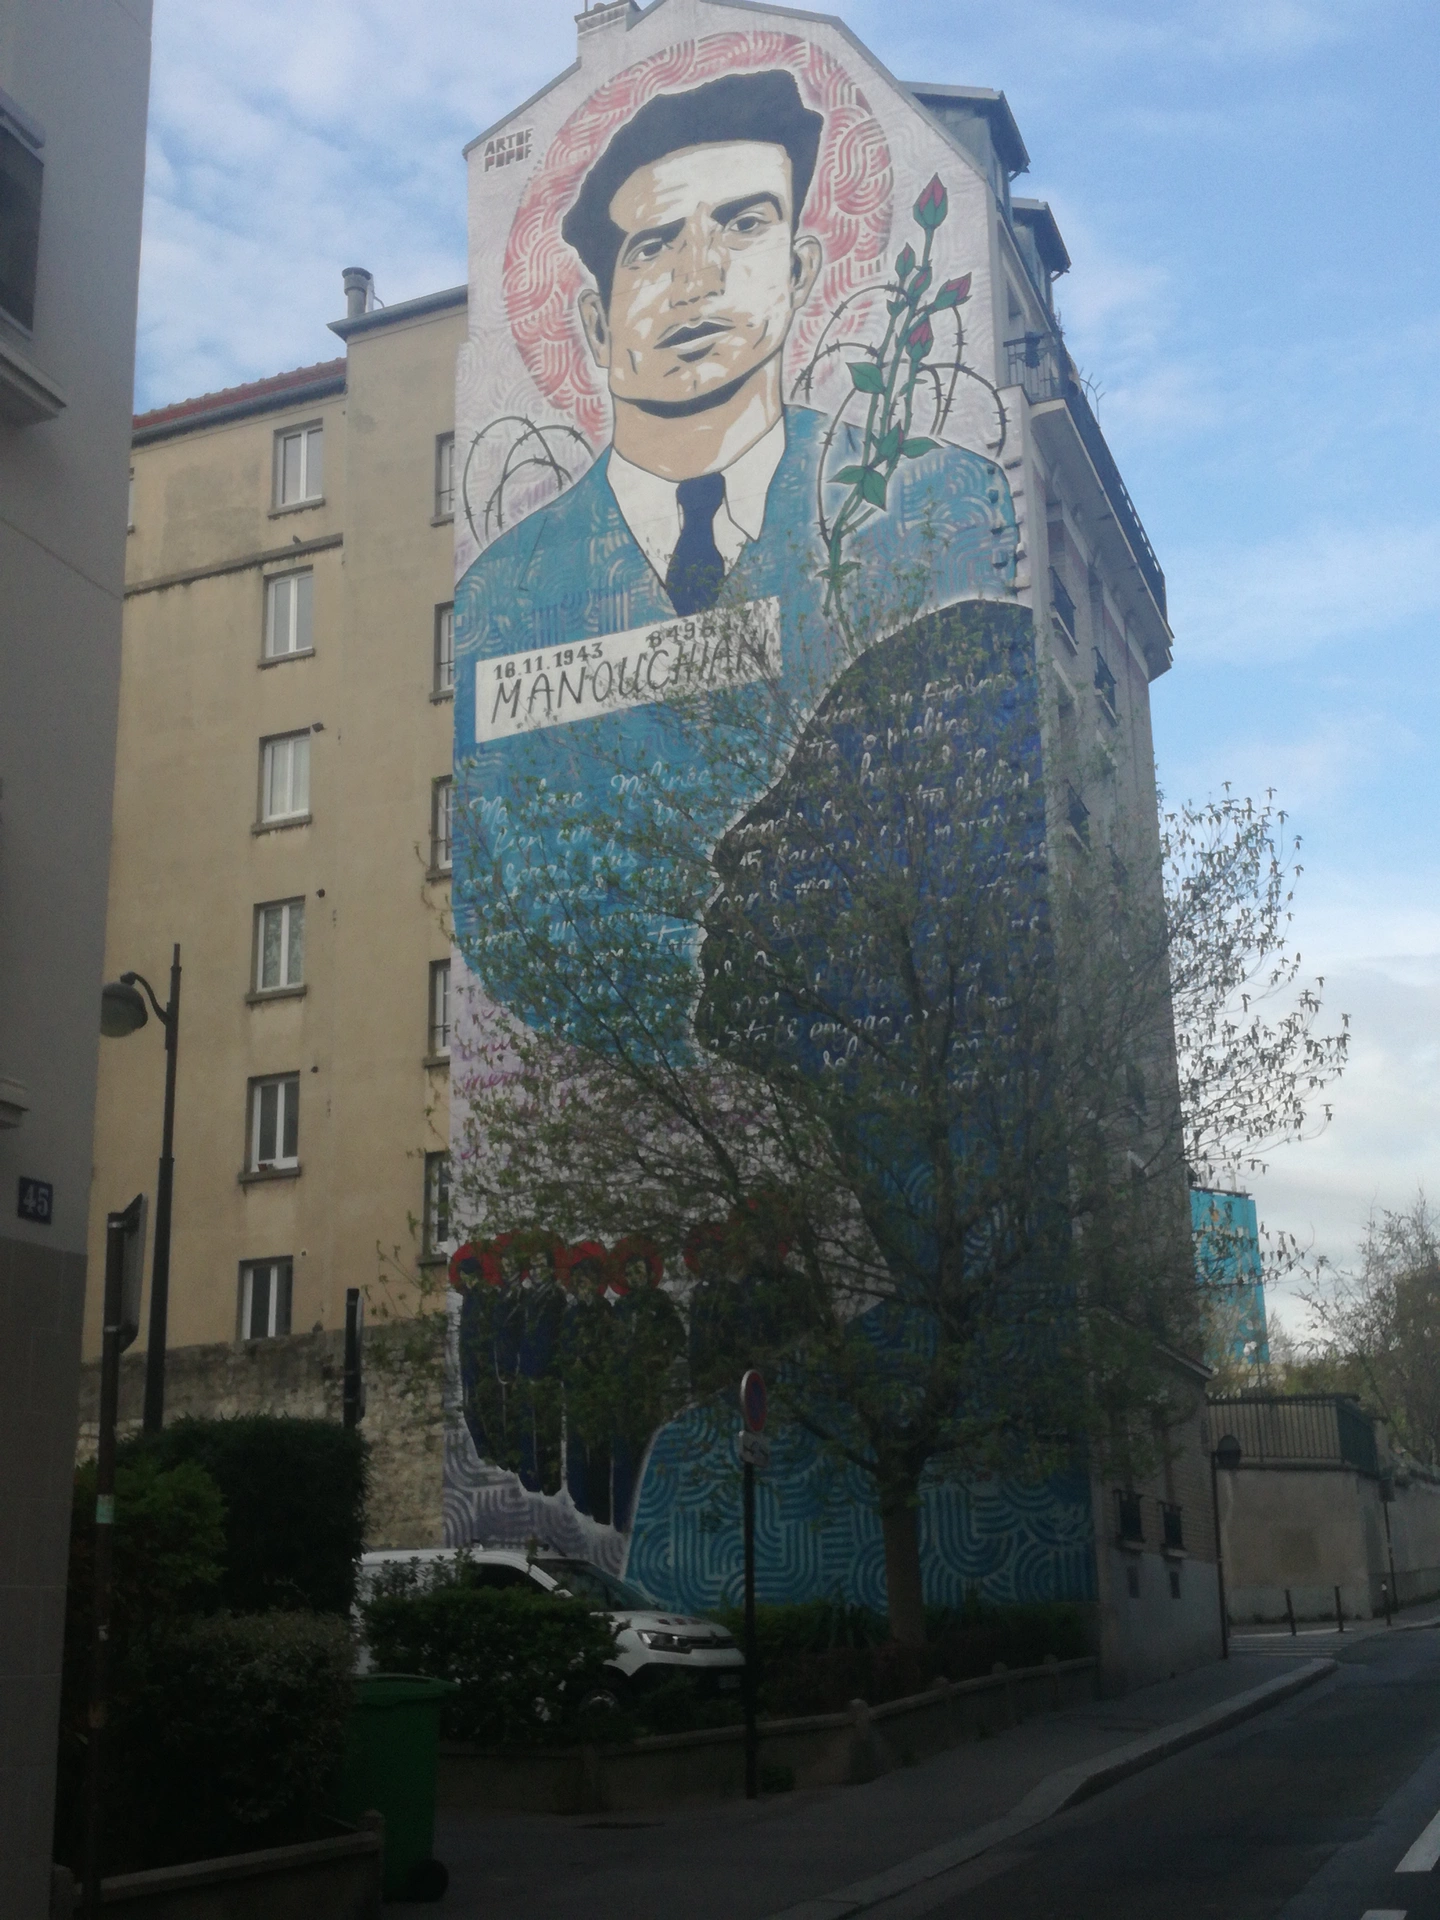 Oeuvre de Street Art réalisée par Artof popof à Paris